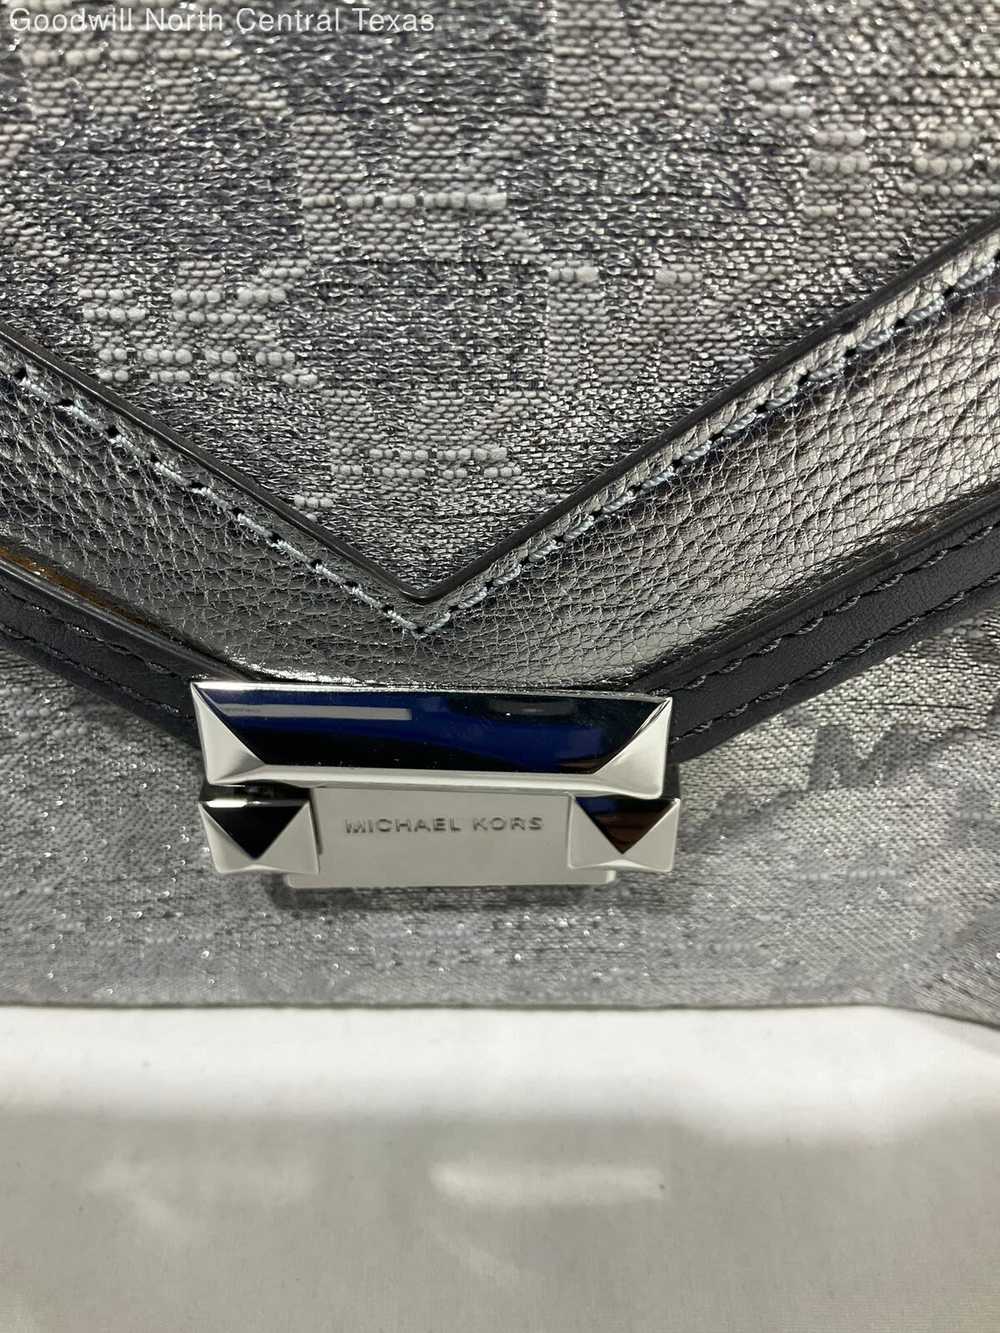 Michael Kors Designer Top Handle Bag - image 2